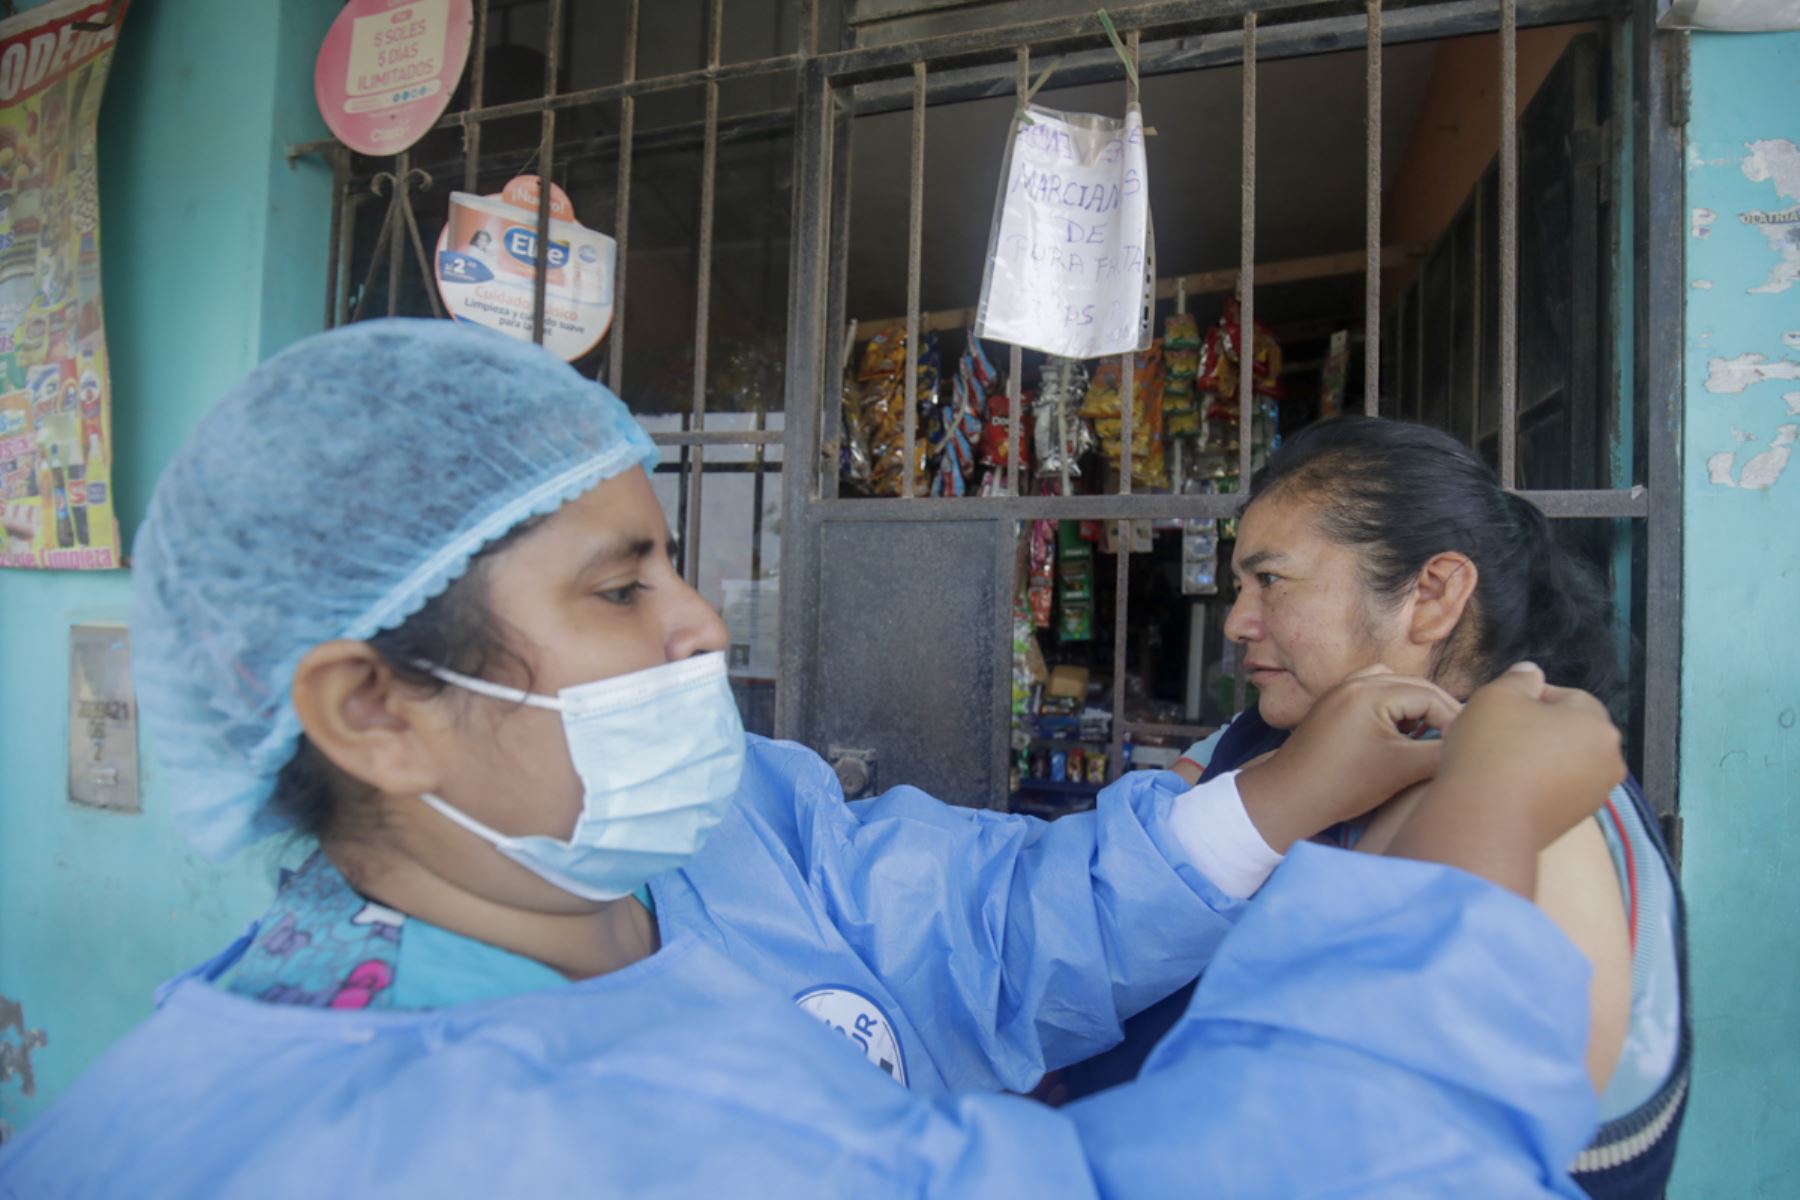 Brigadas móviles visitan, casa por casa, para realizar vacunación contra la influenza y el neumococo en Ticlio Chico.

Foto: ANDINA/Juan Carlos Guzmán Negrini